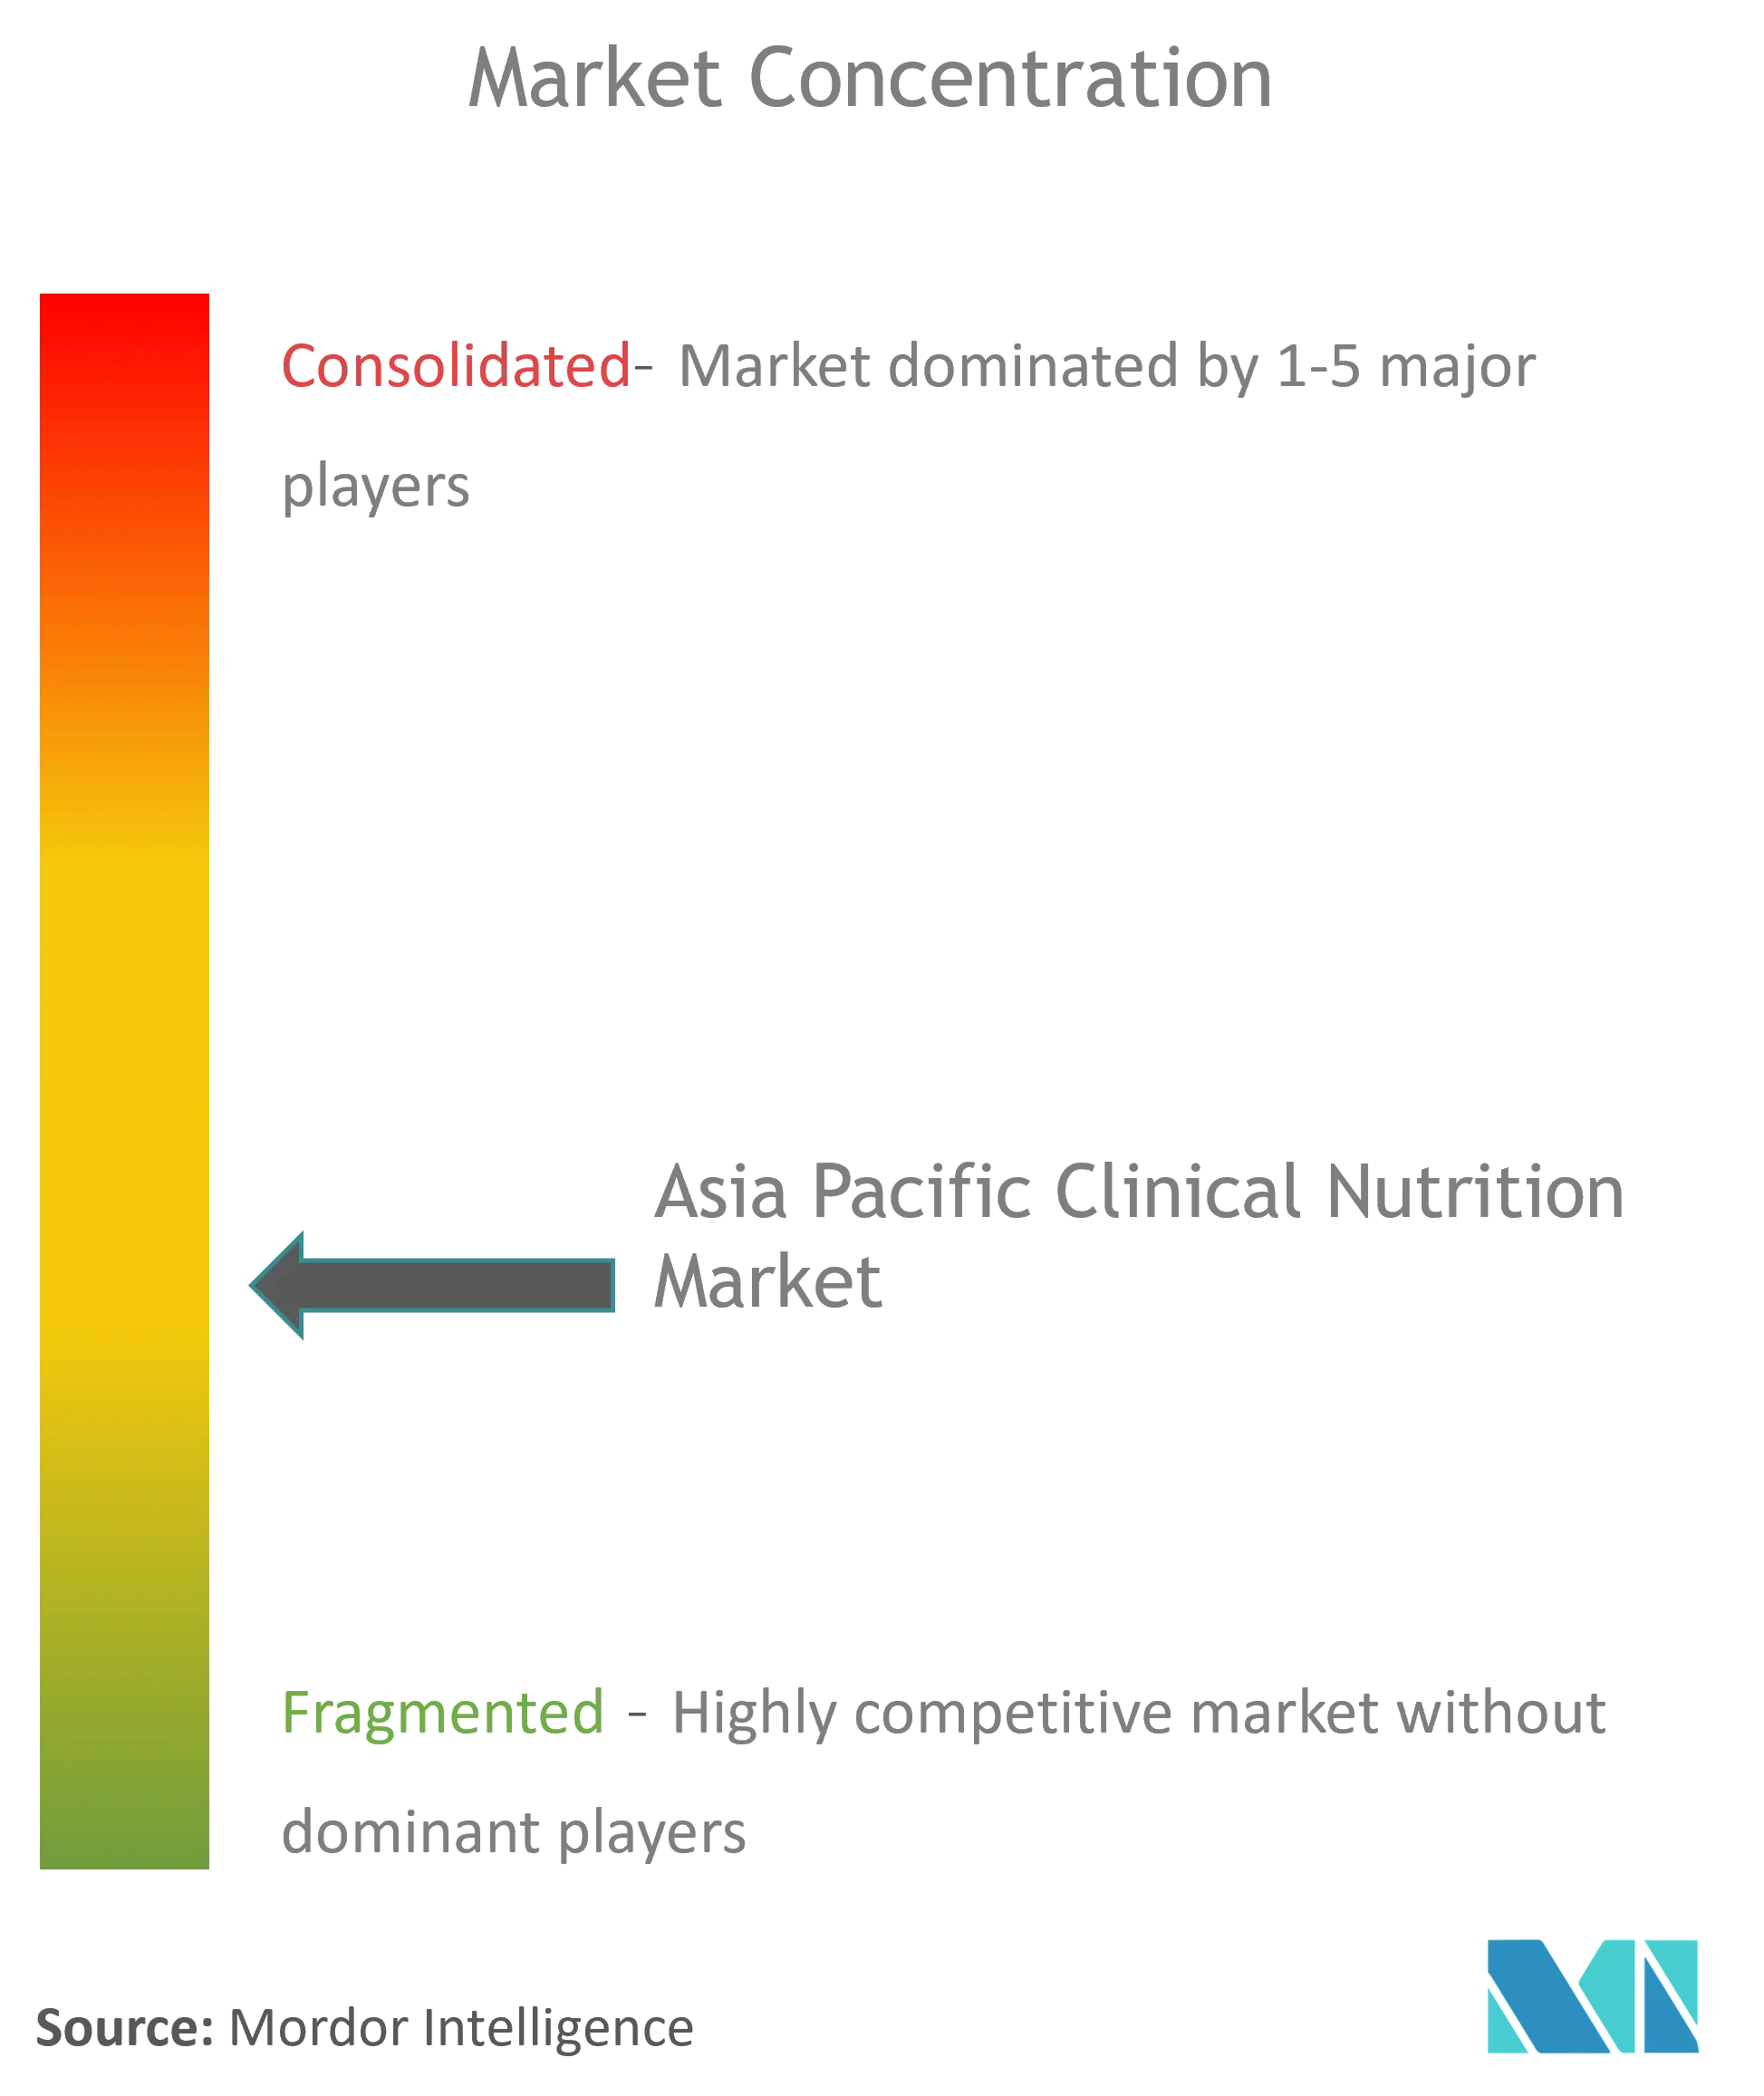 Nutrition clinique Asie-PacifiqueConcentration du marché